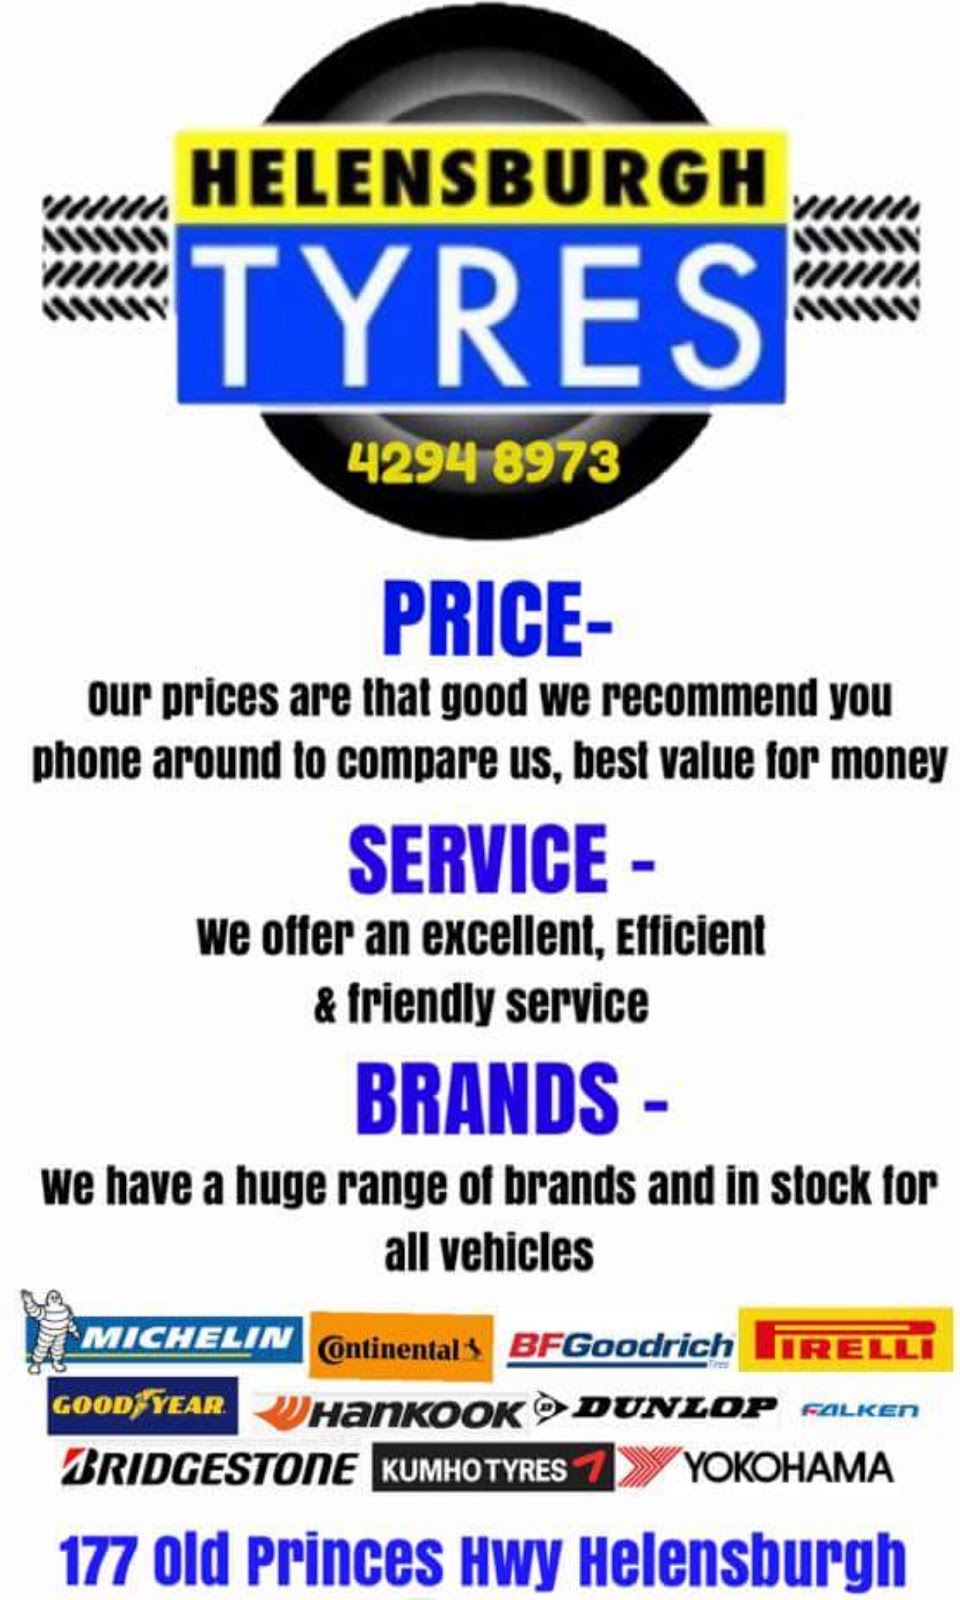 Helensburgh Tyres | car repair | 177 Old Princes Hwy, Helensburgh NSW 2508, Australia | 0242948973 OR +61 2 4294 8973